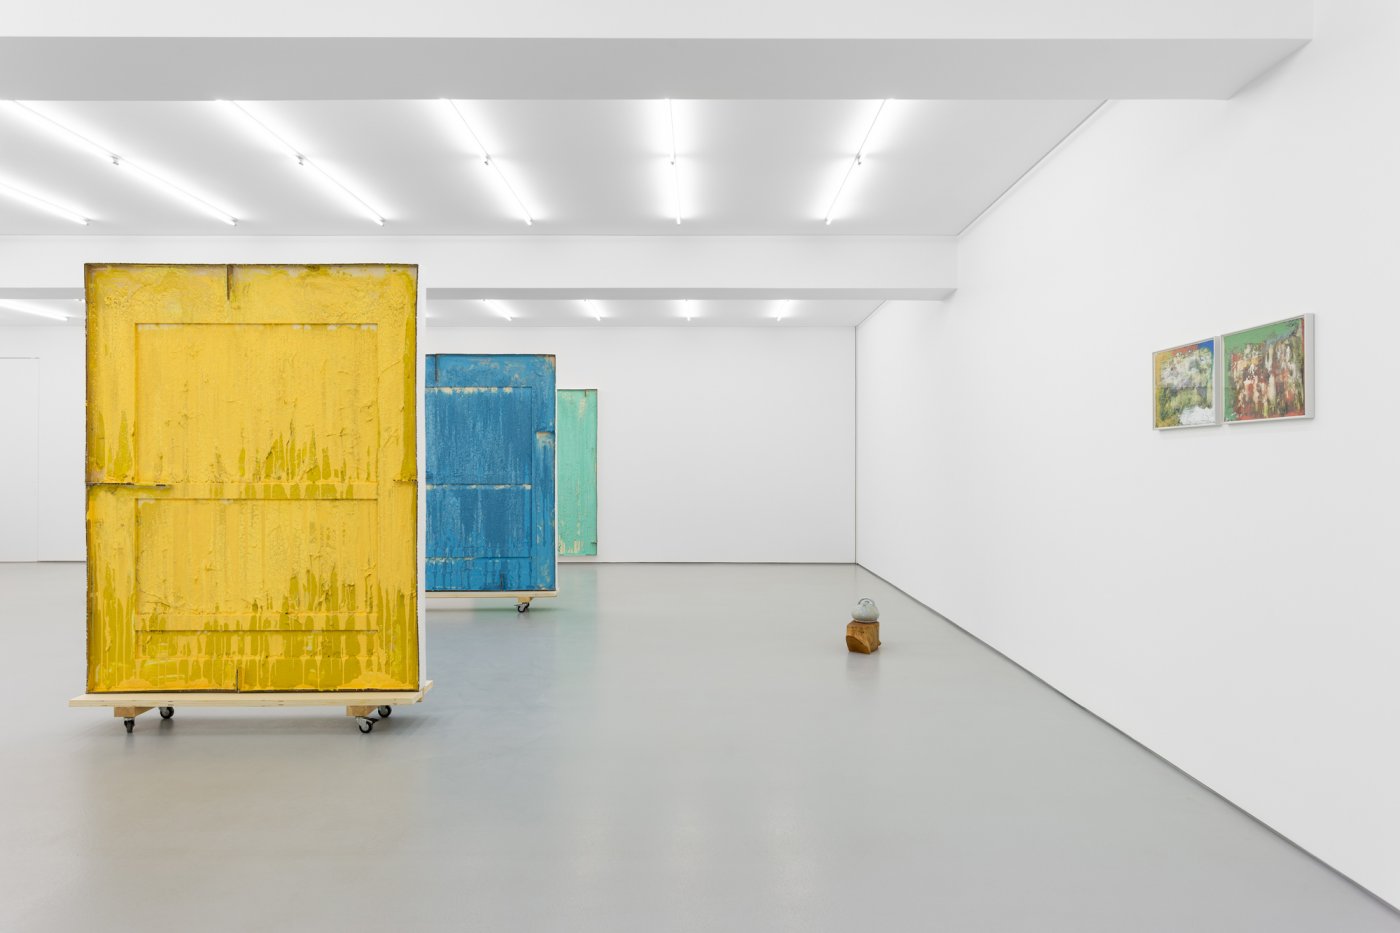 Exhibition view: Casa, Carlos Bunga, Galeria Vera Cortês, 2021
